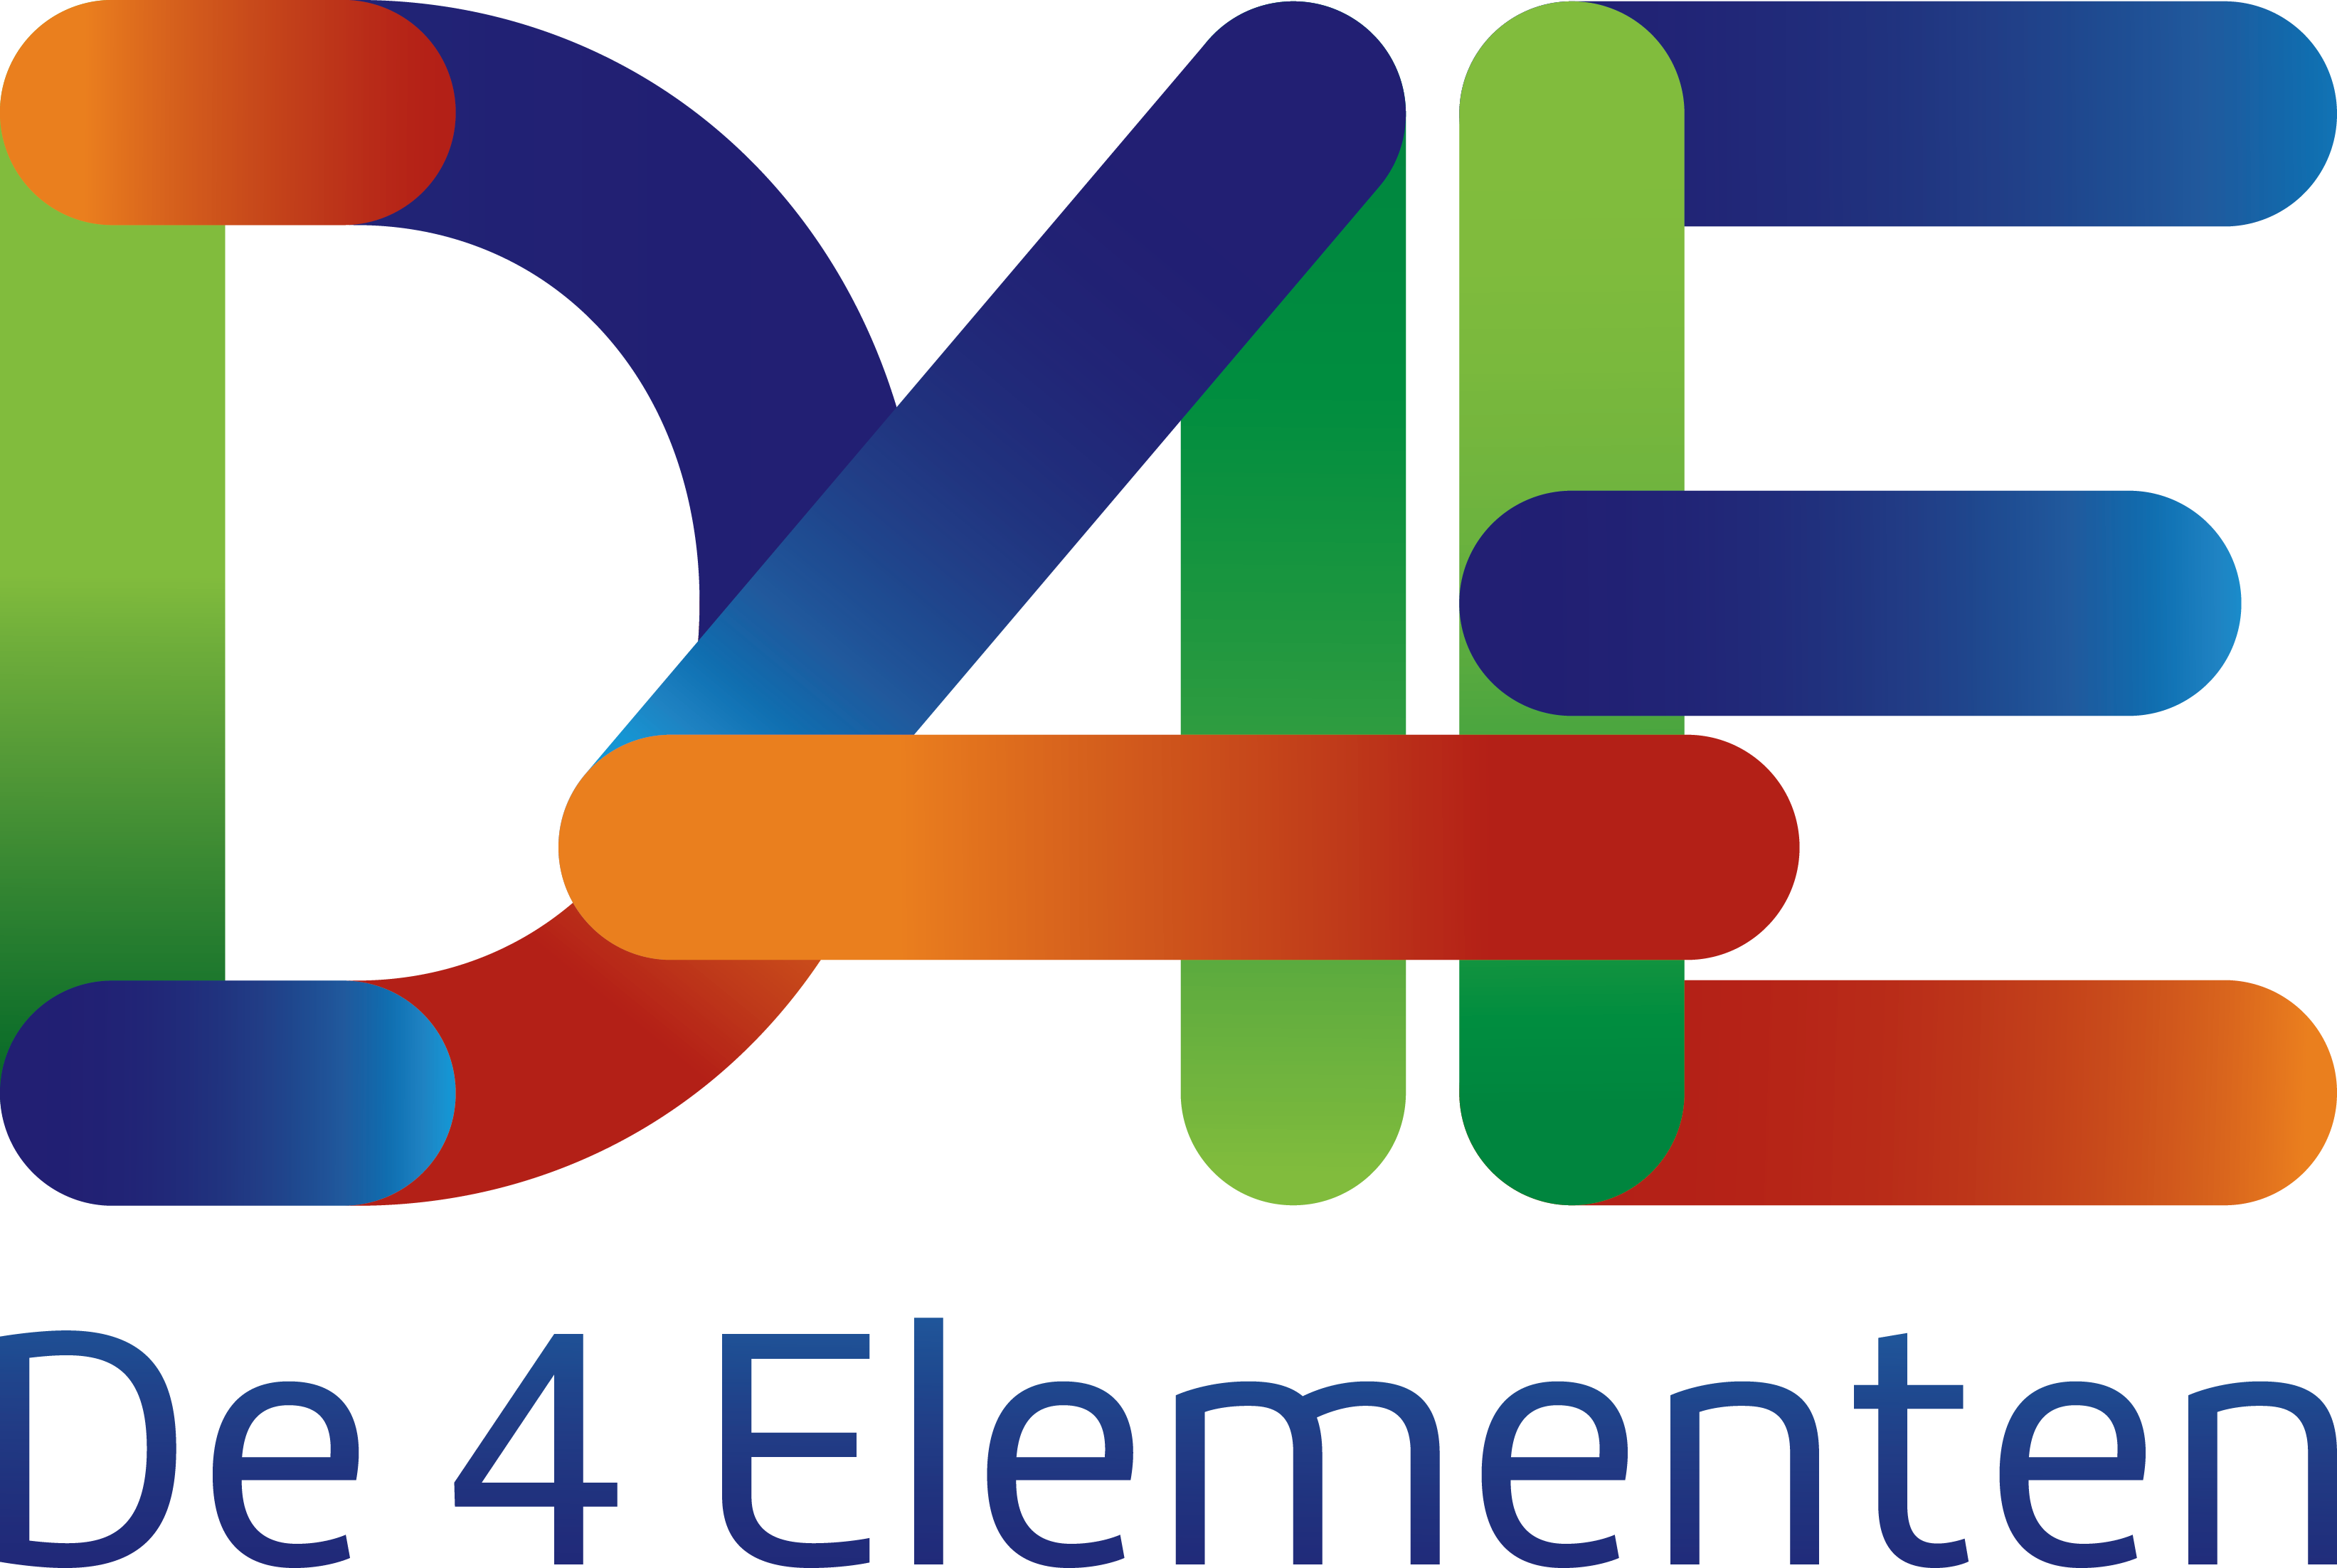 De 4 Elementen